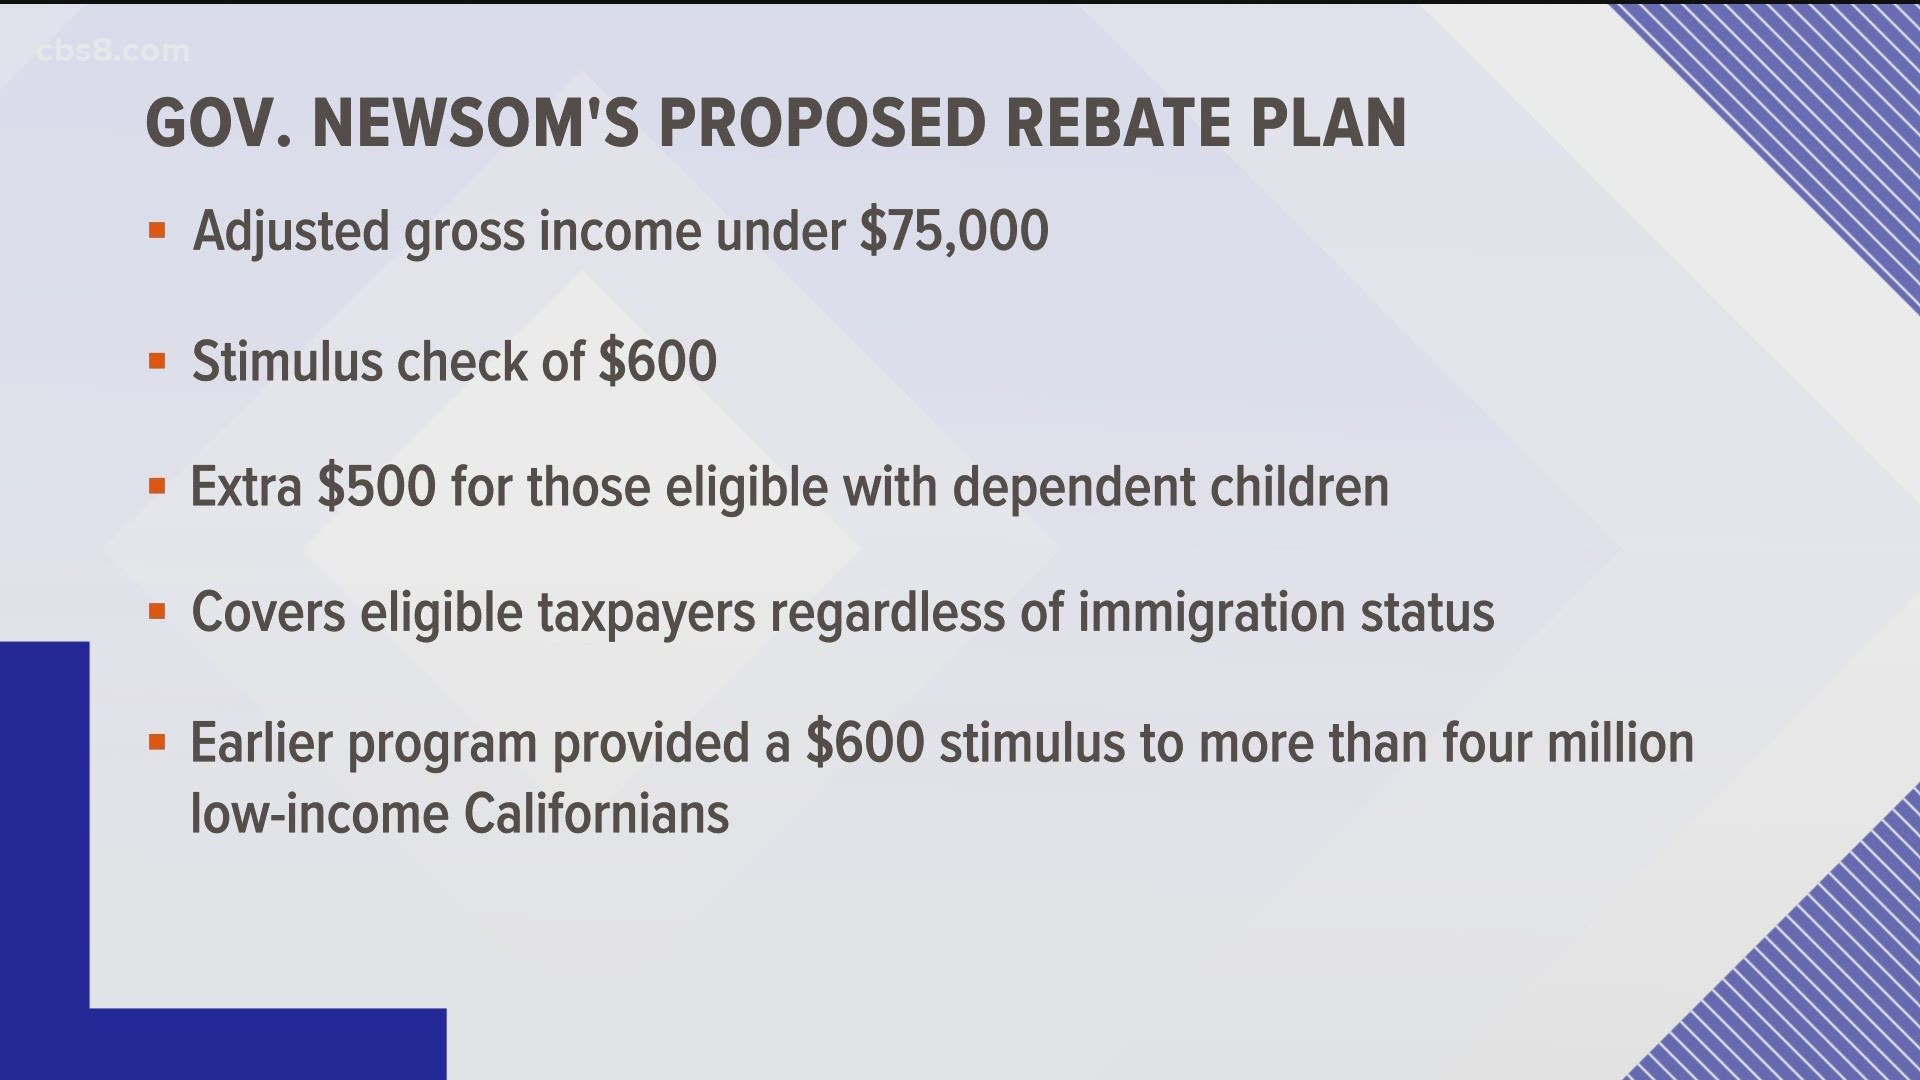 Newsom proposes $100 B plan for CA, stimulus checks, rent relief | cbs8.com